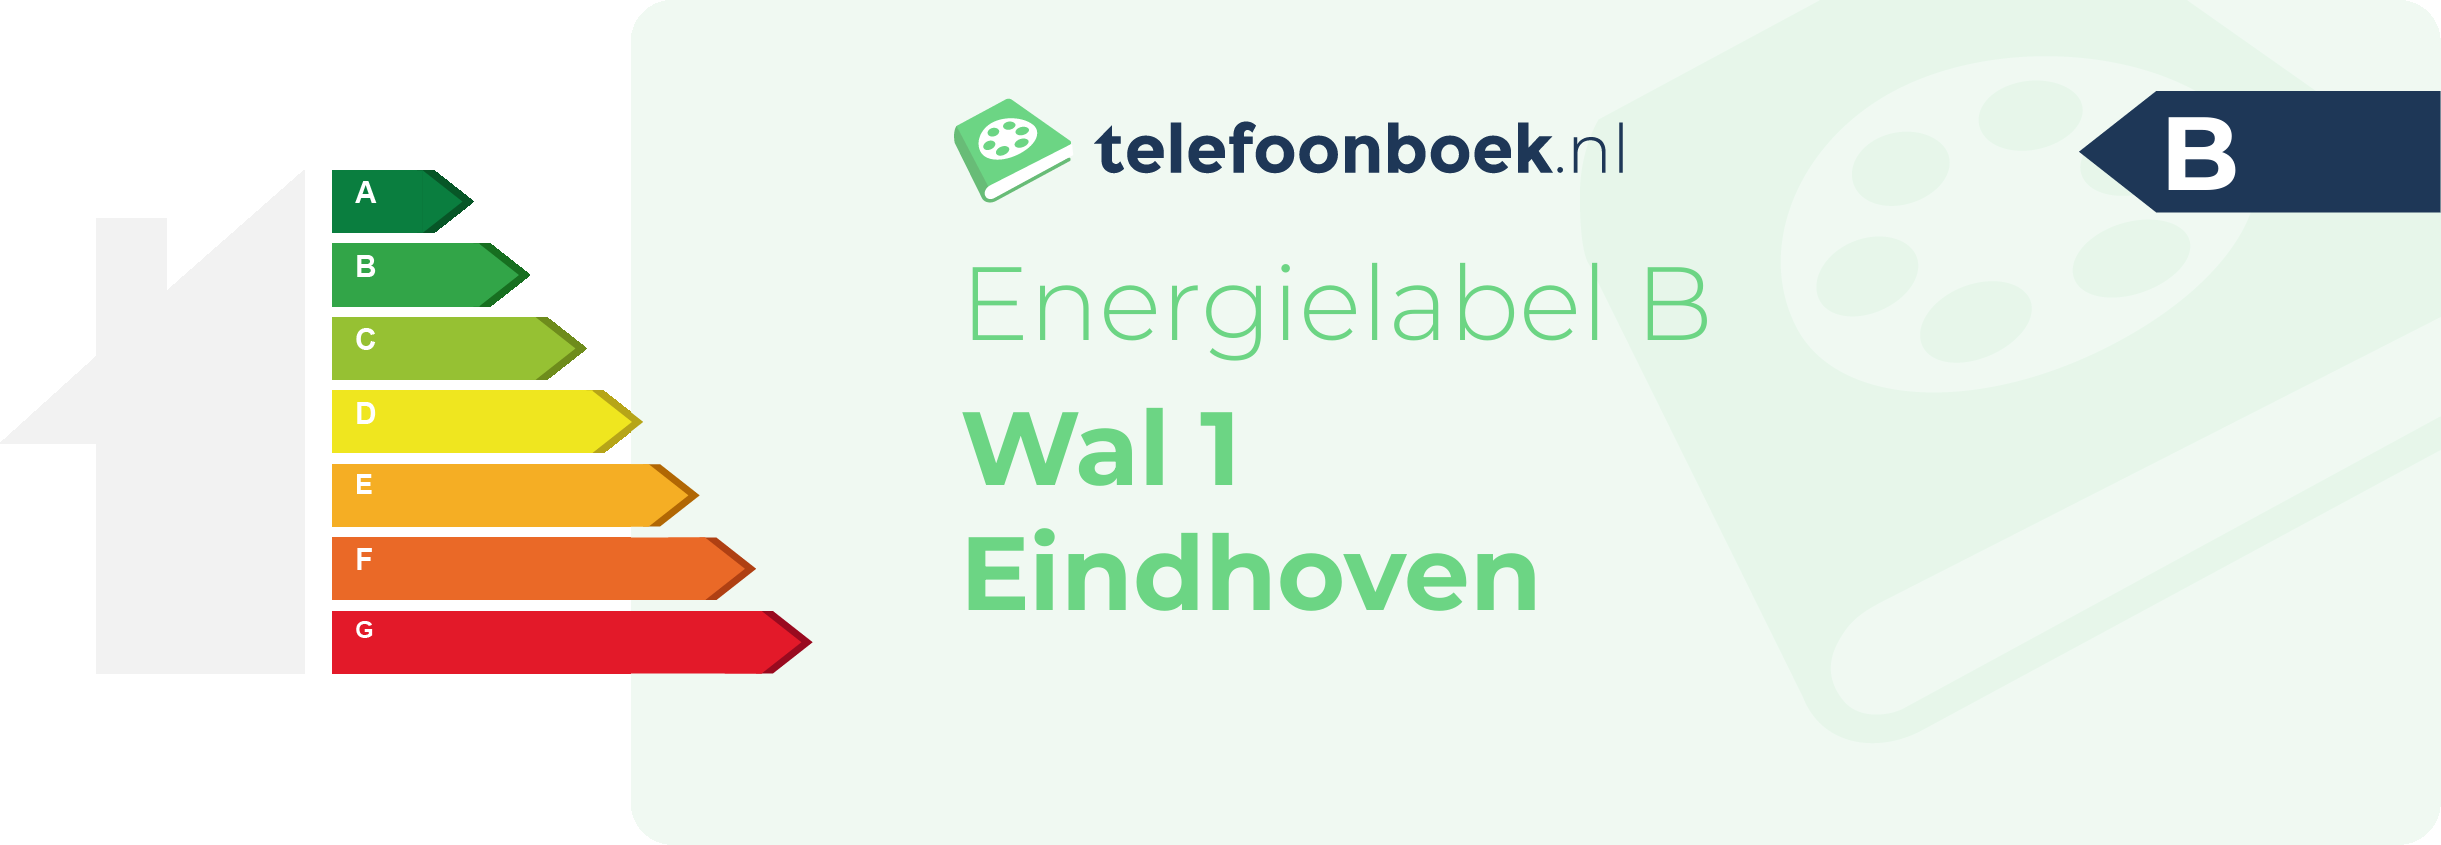 Energielabel Wal 1 Eindhoven